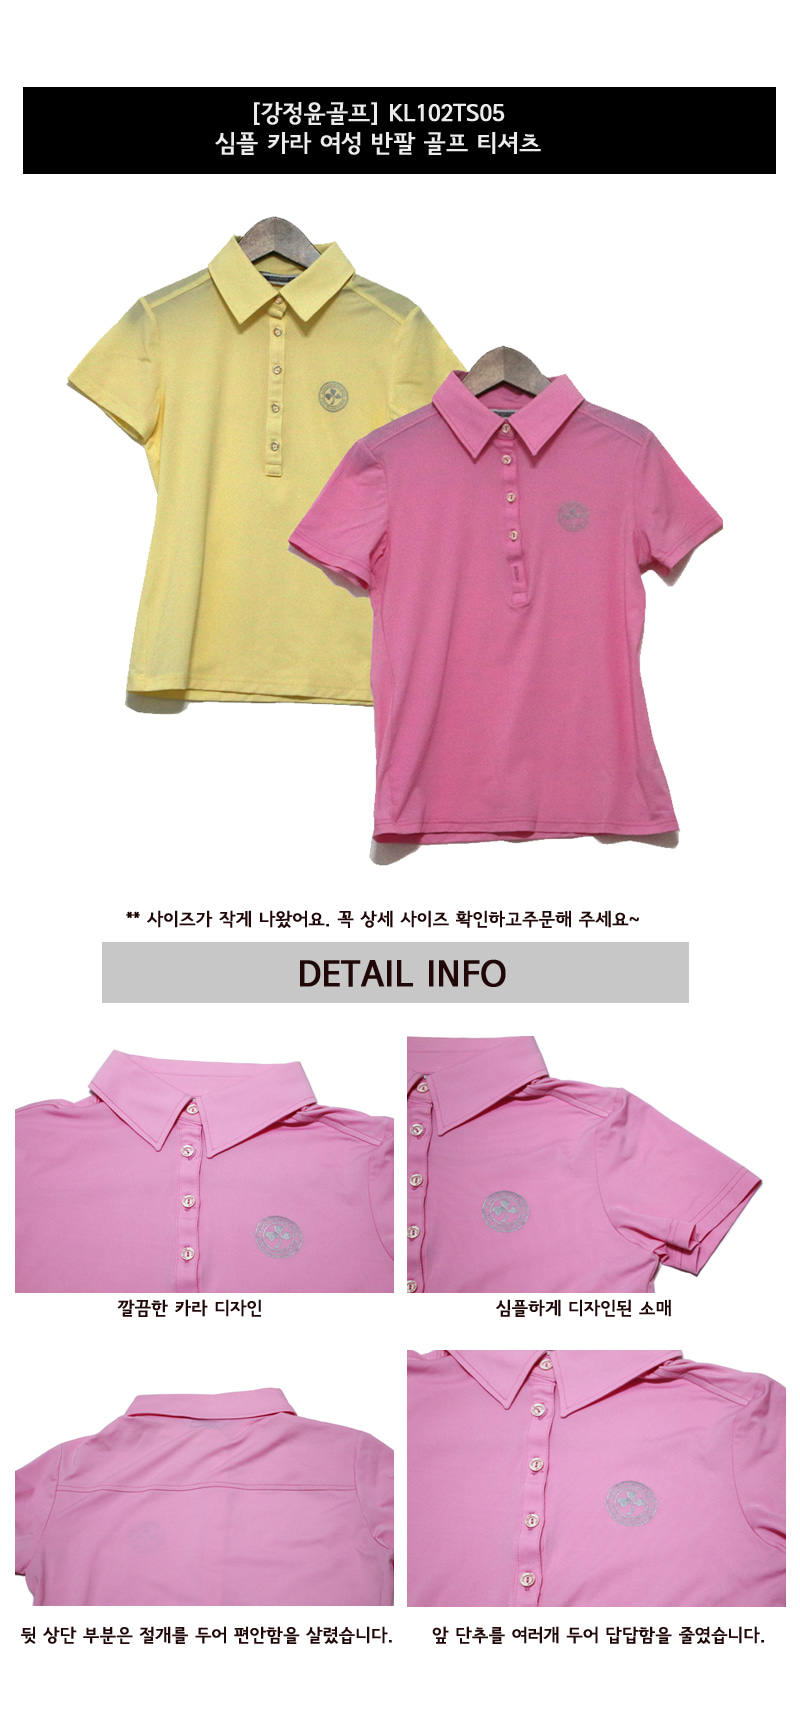 강정윤골프 심플 카라 여성 반팔 골프 티셔츠 (KL102TS05) 색상 디테일 설명